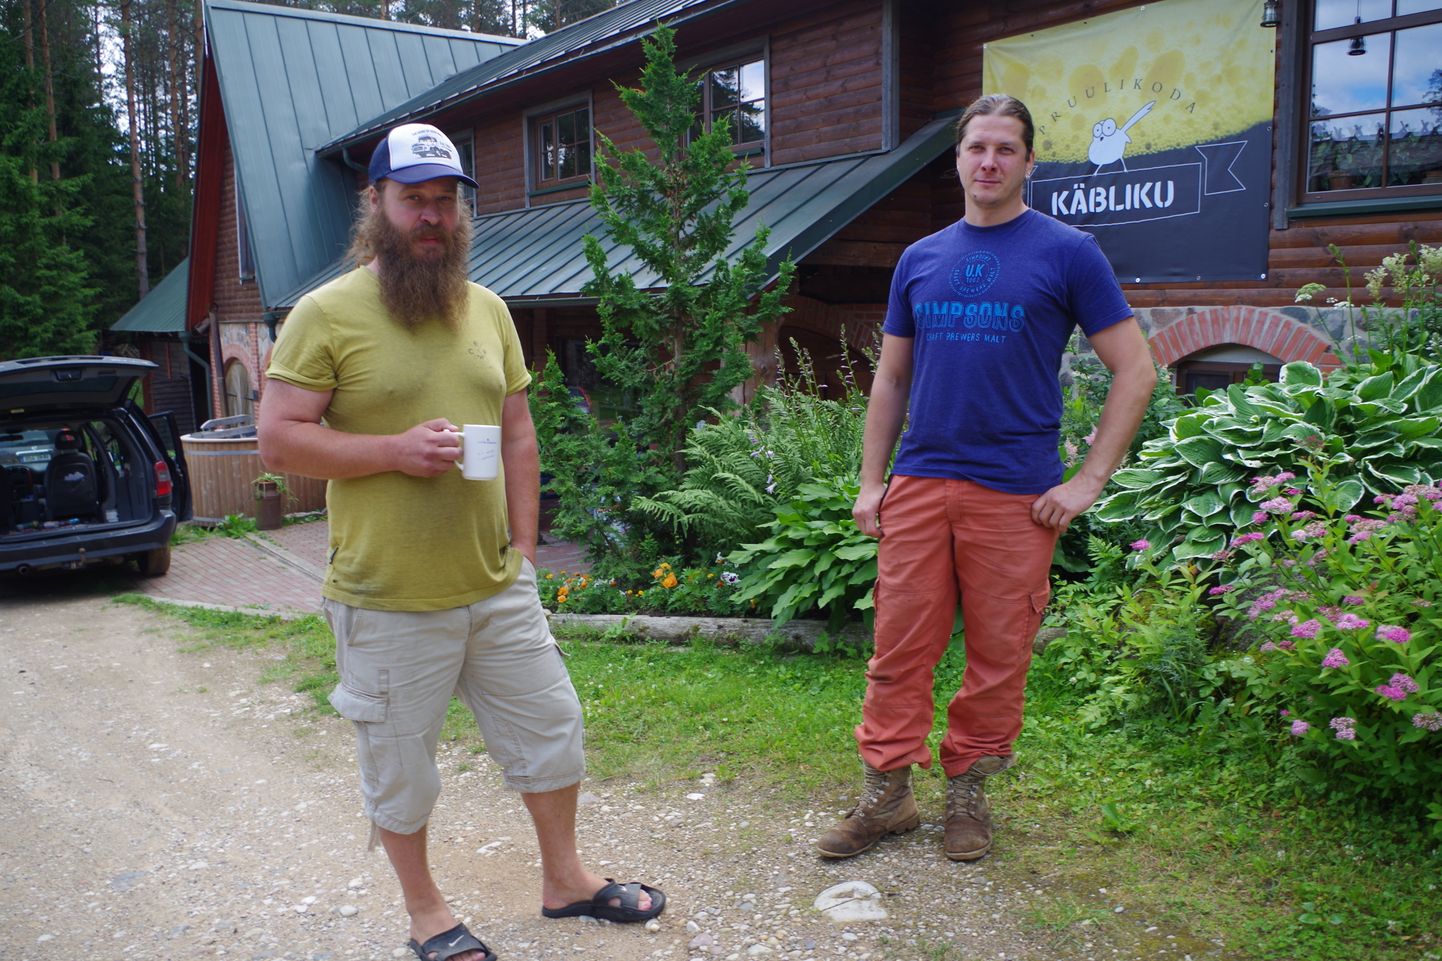 Õllemeistrid Janar Karakatš (vasakul) ja Marko Muruma loodavad Käbliku talus korraldatava õlle- ja rokifestivaliga elavdada õlleturismi ja -kultuuri.